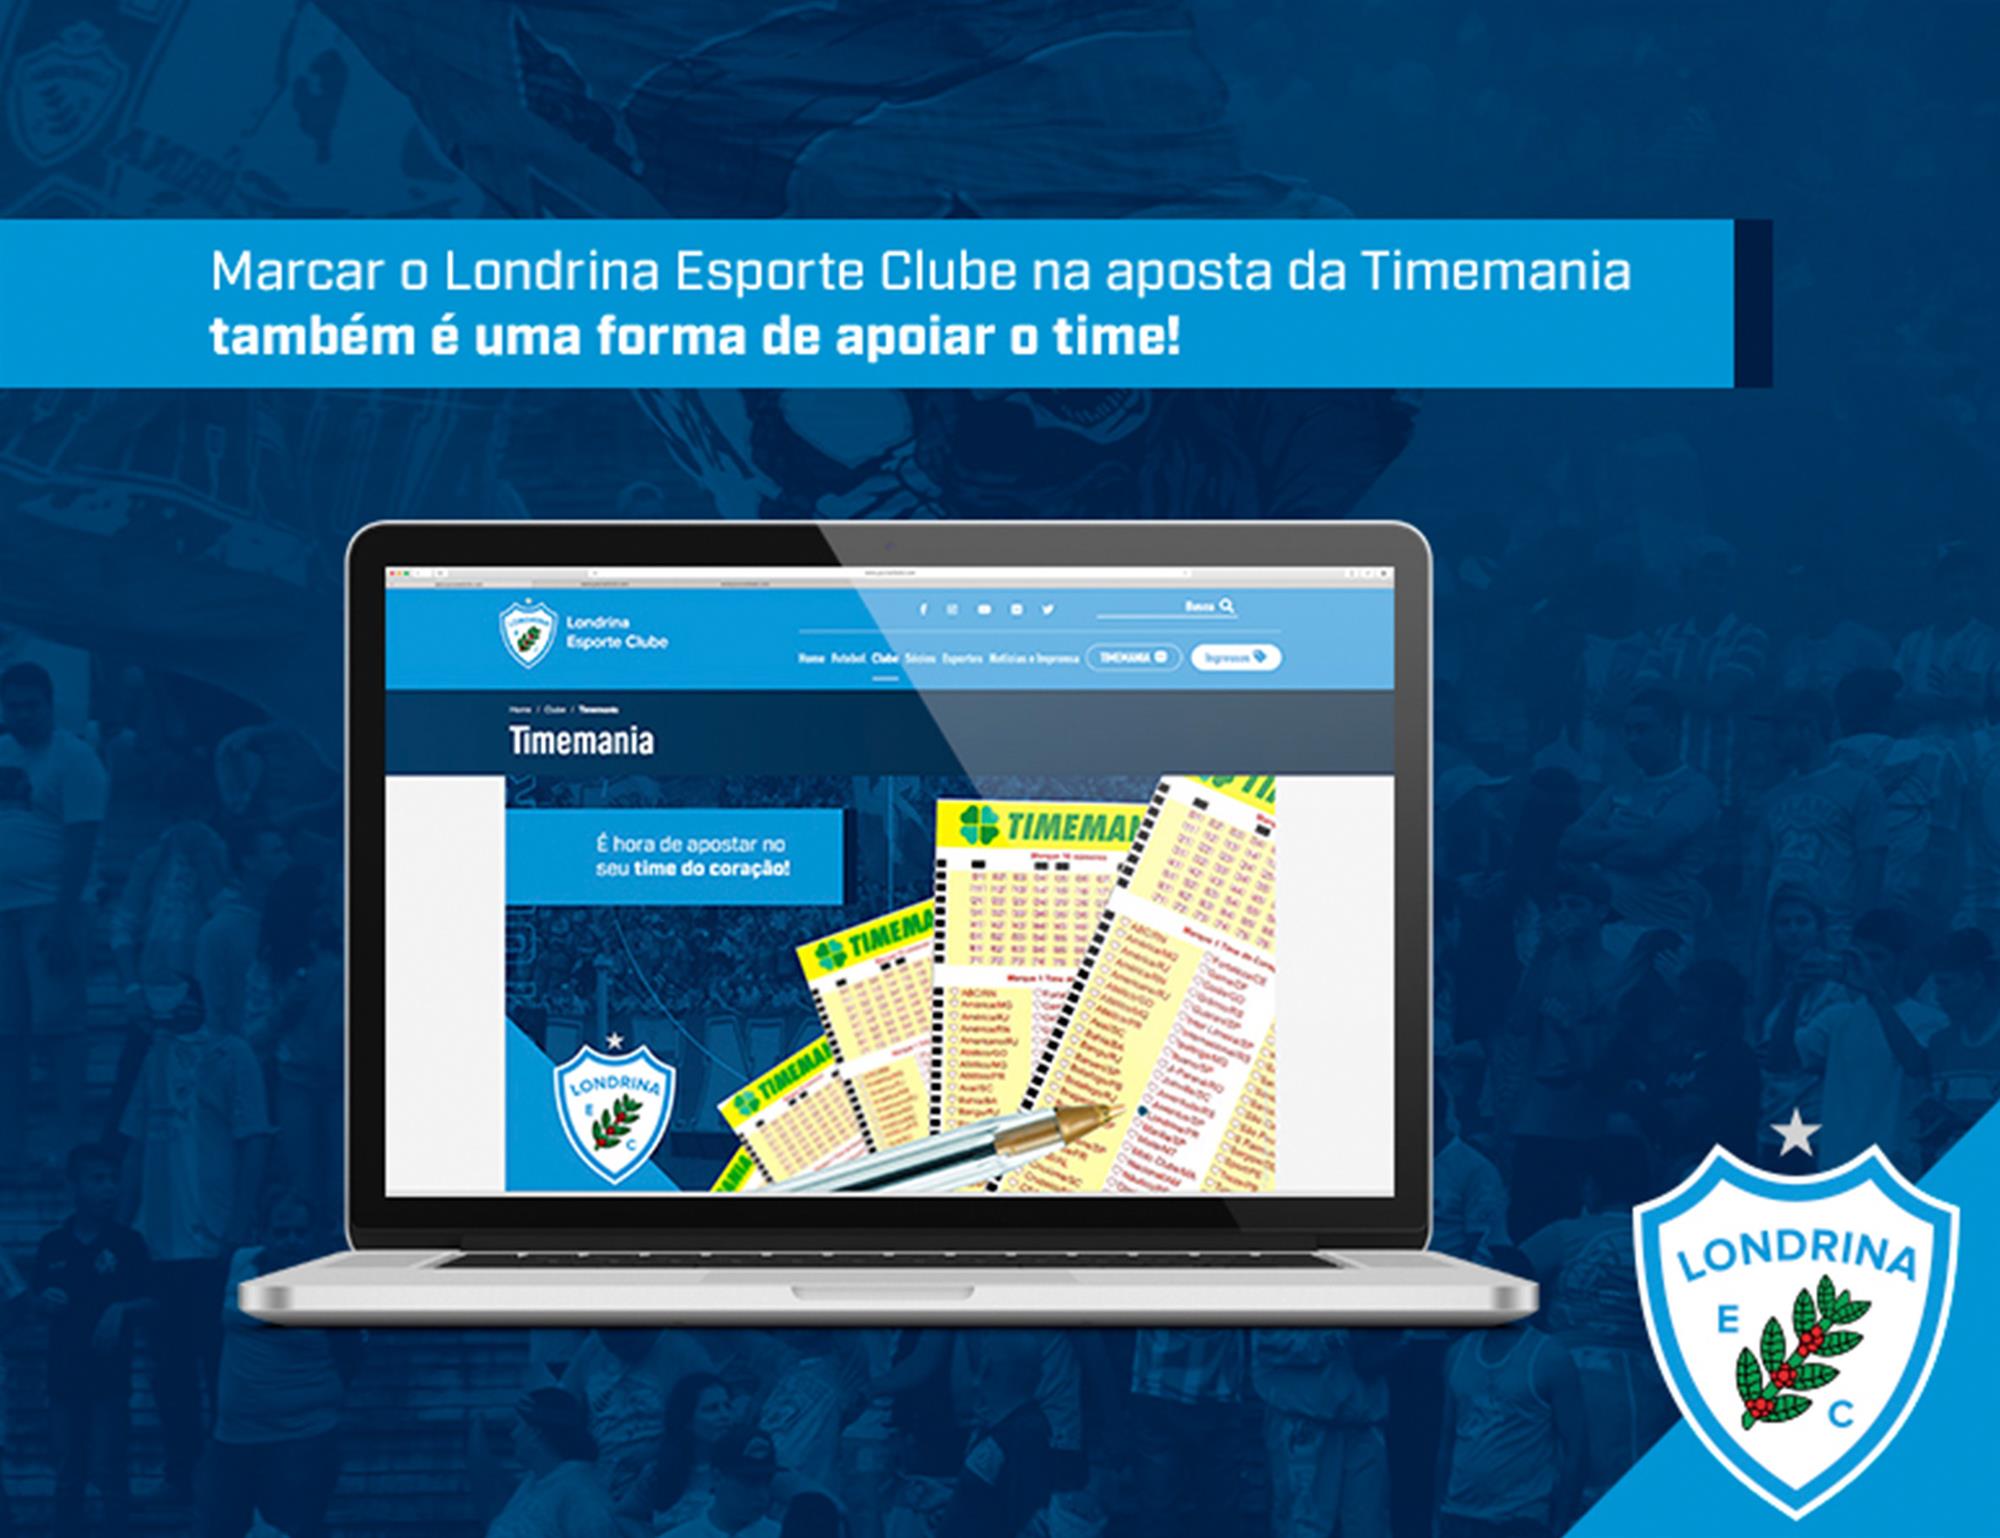 Timemania pode ser o maior patrocinador da história do Londrina